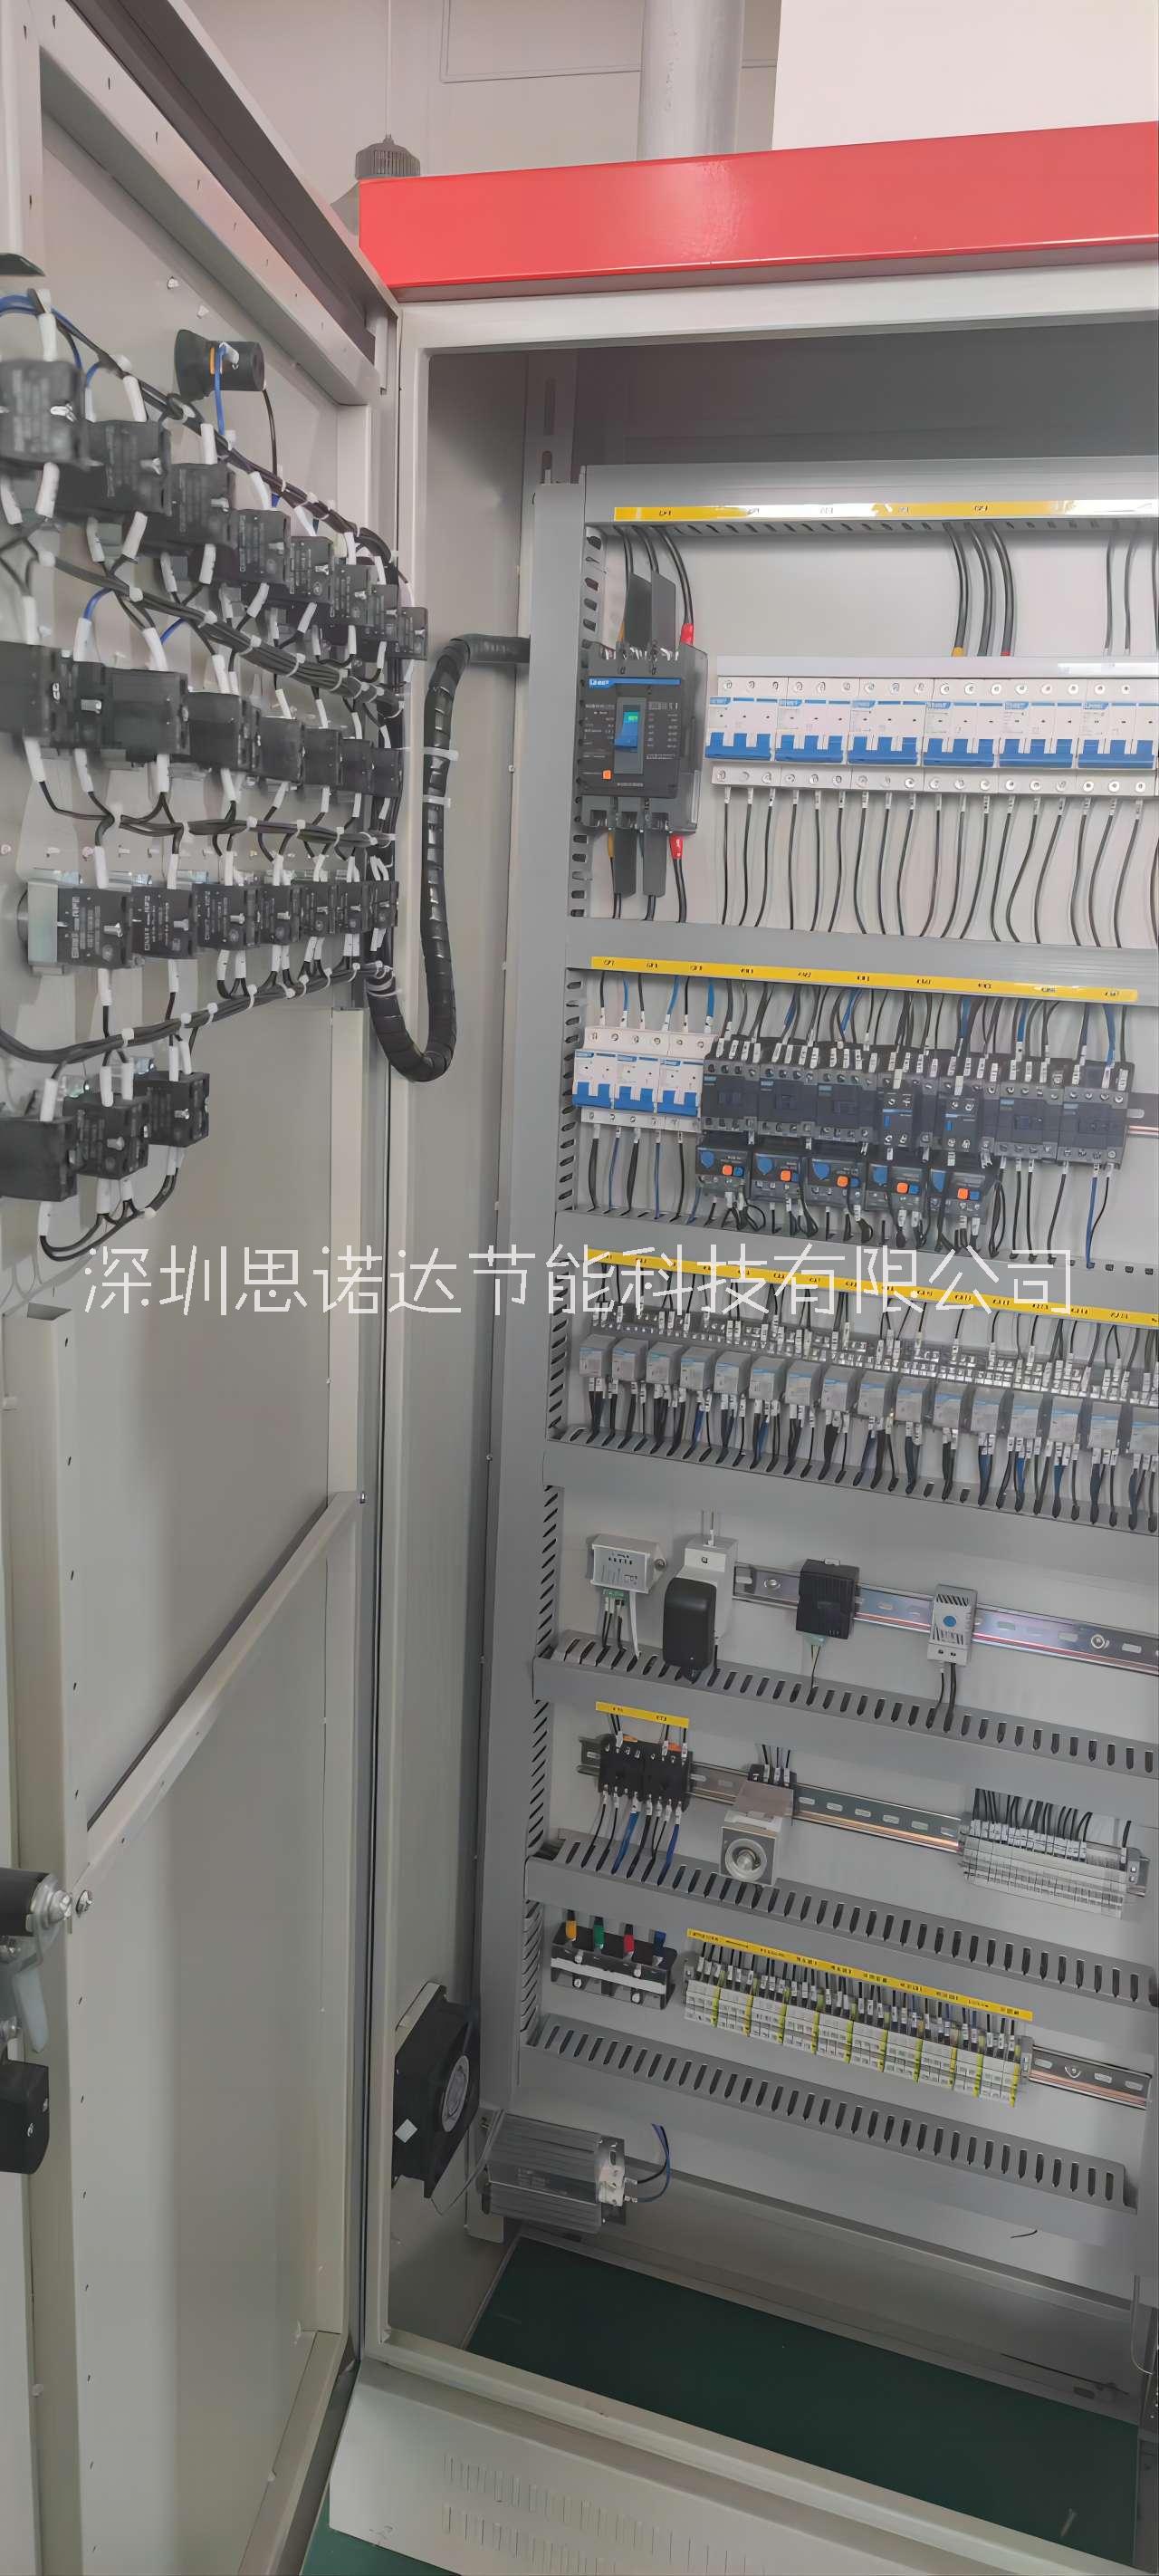 成套PLC控制系统供应商 电箱控制柜厂家定制 重庆思诺达成套PLC控制系统供应商 电箱控制柜厂家定制